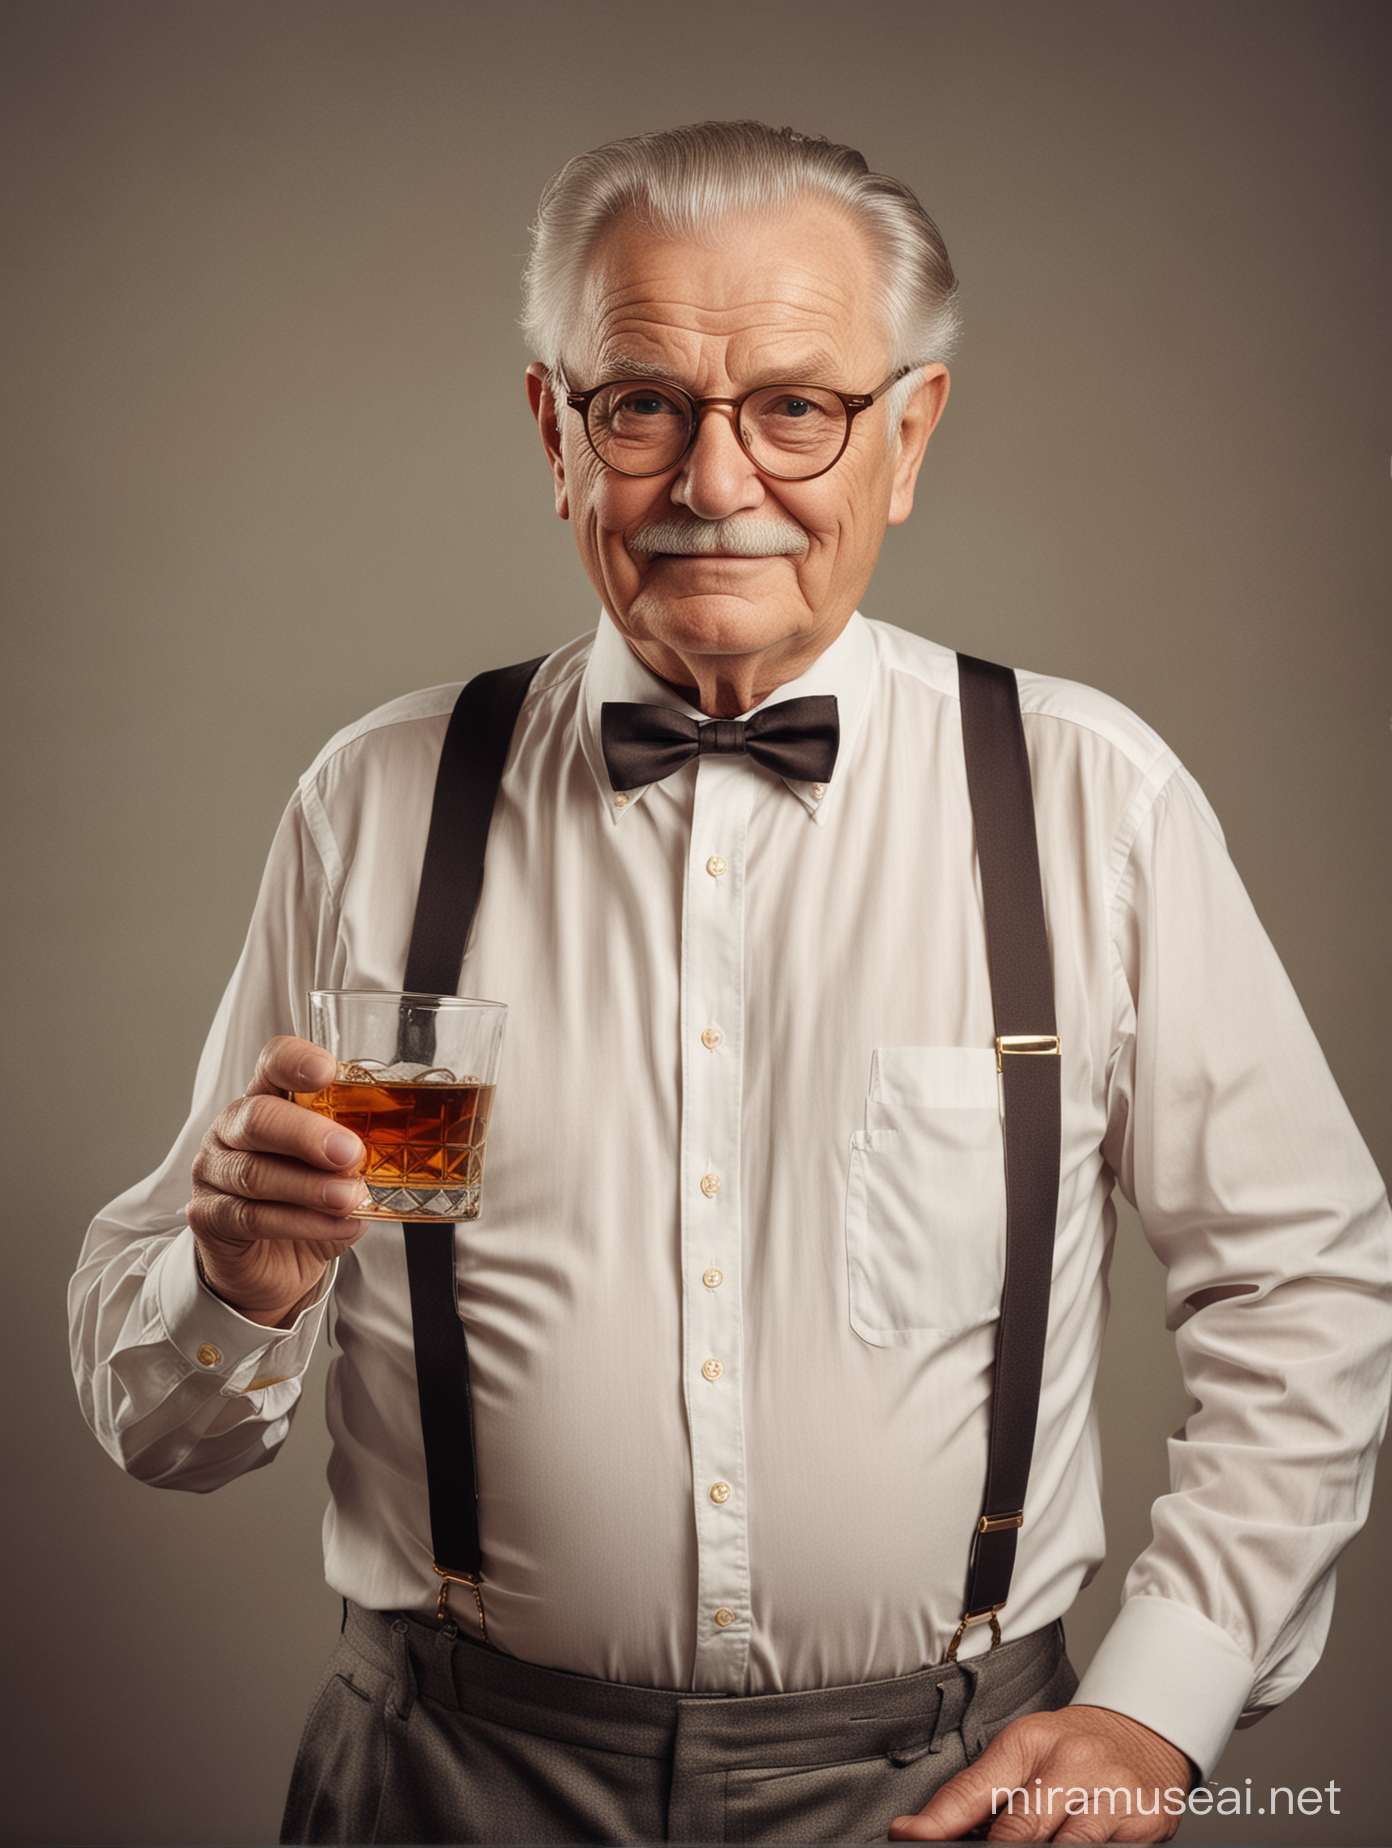 Пожилой мужчина, толстый, рубашка, подтяжки, очки в тонкой золотой оправе, держит бокал виски